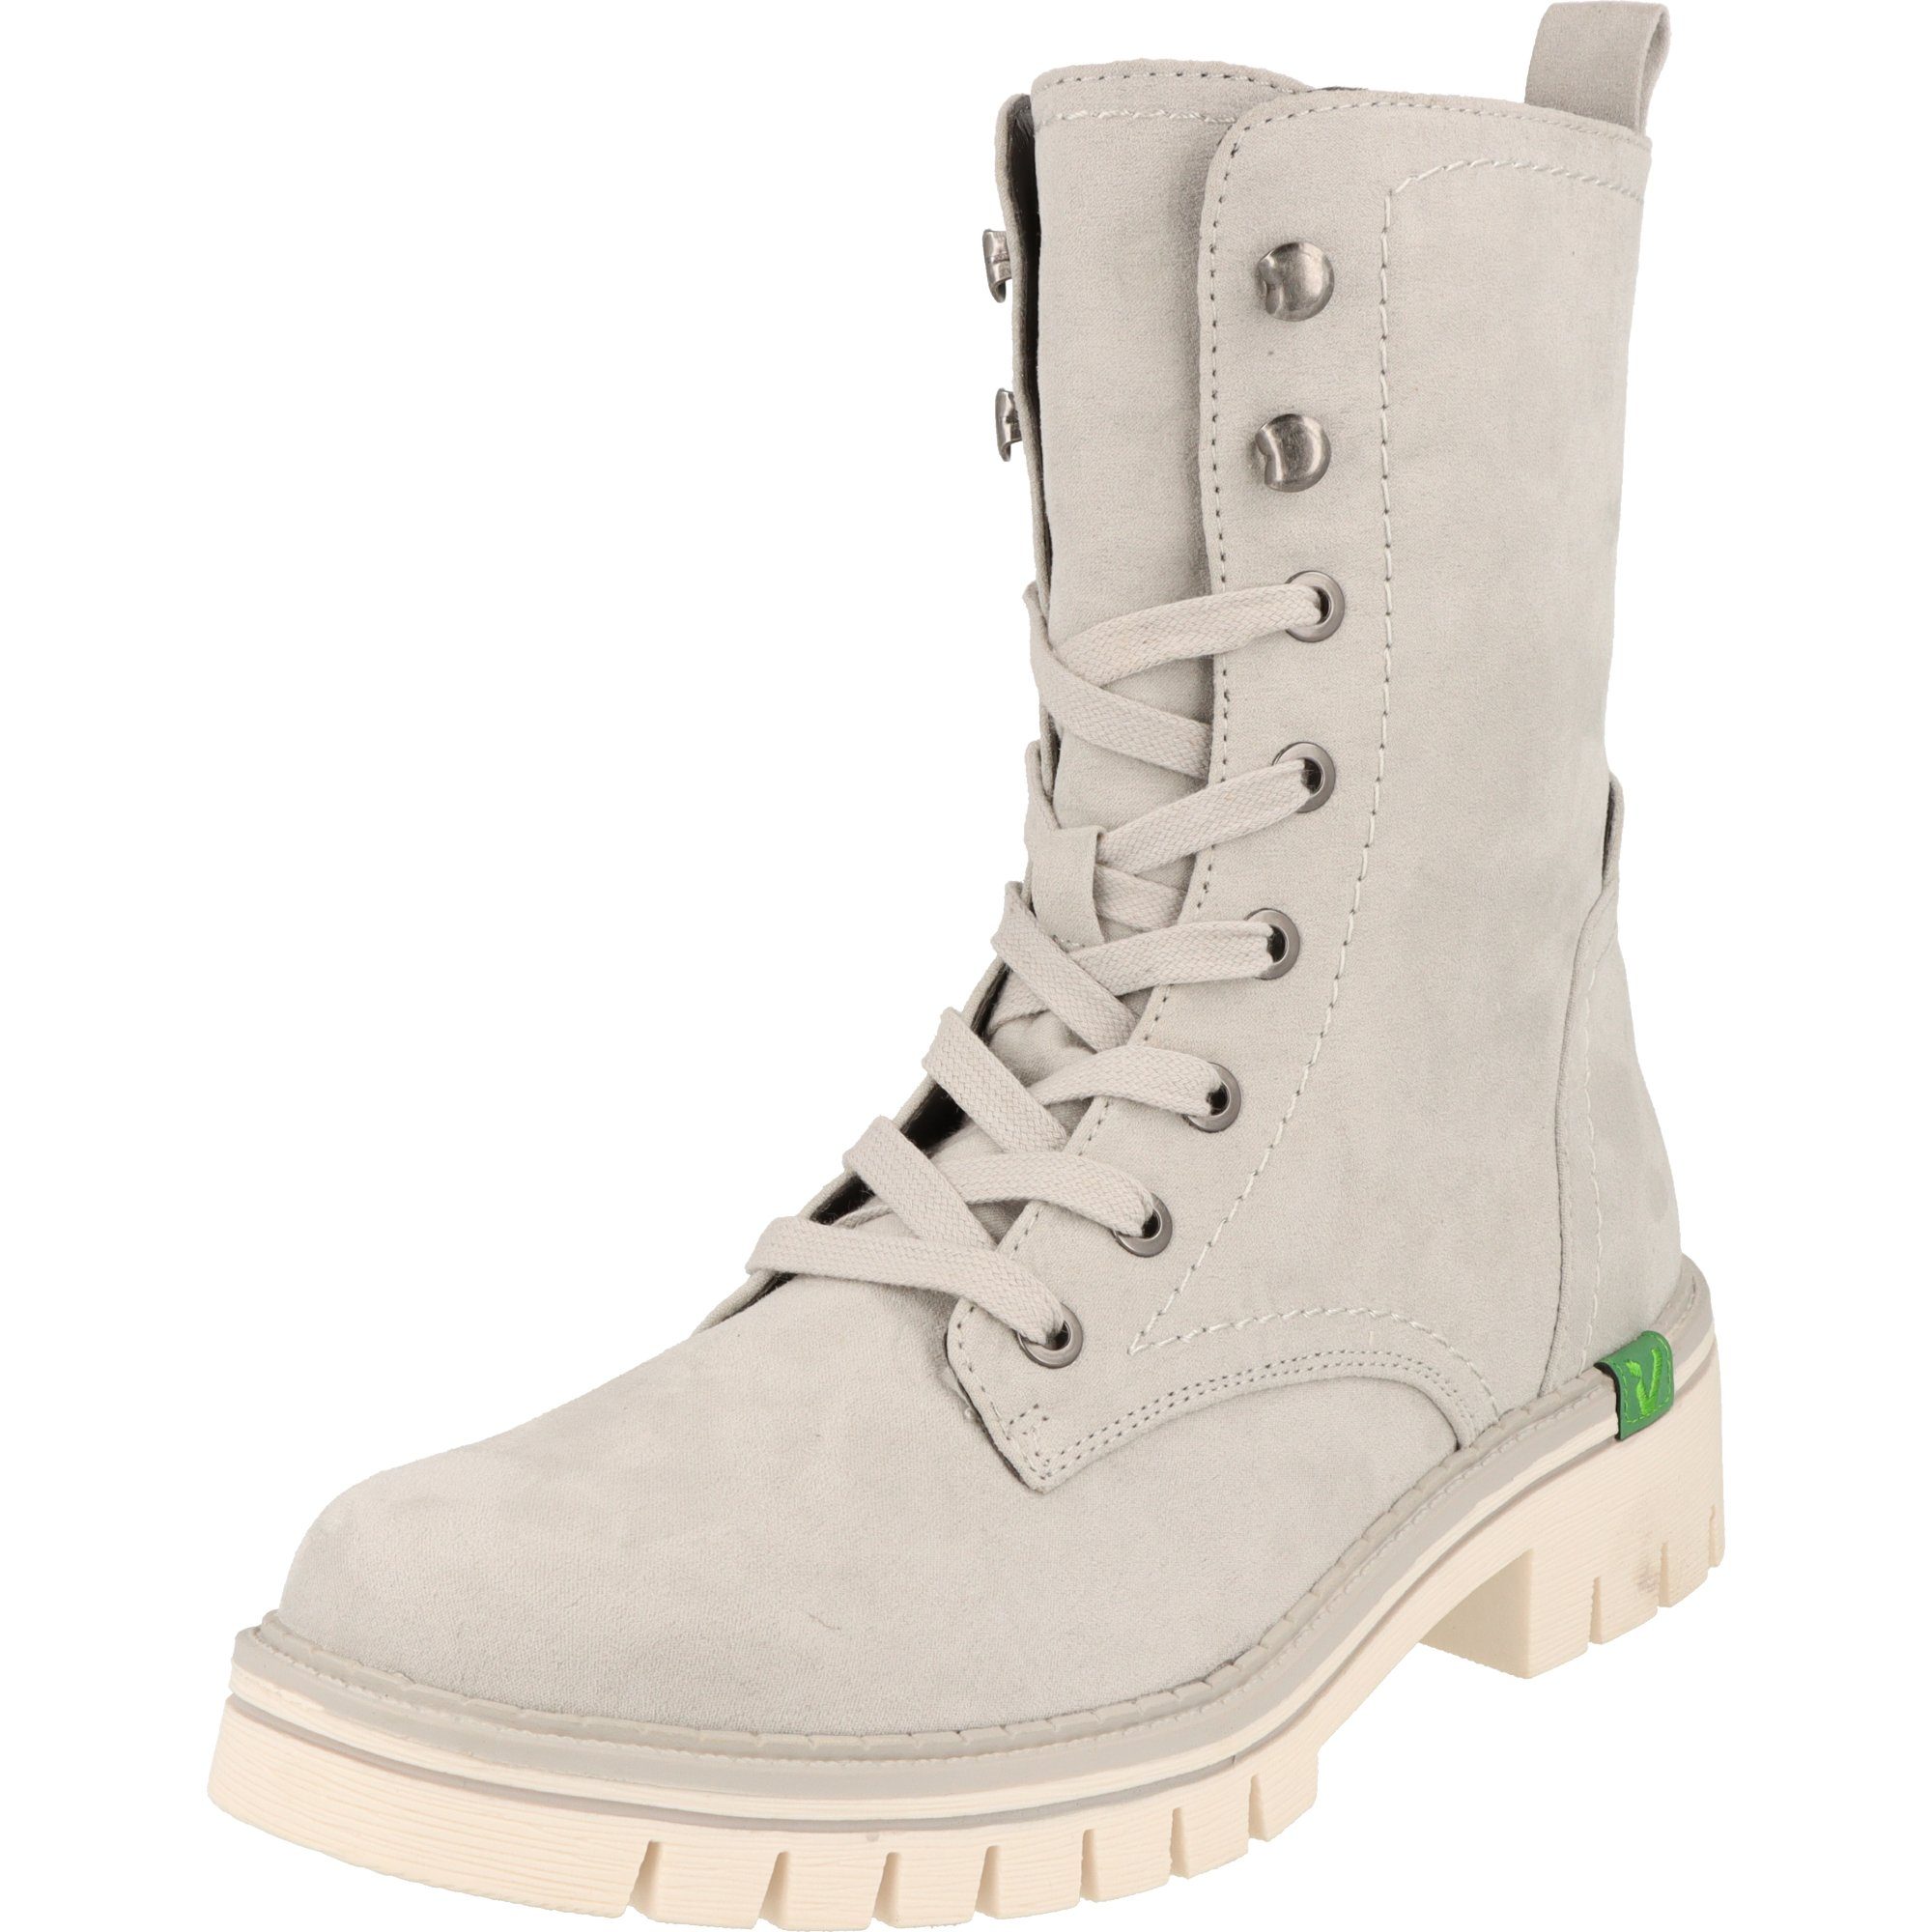 Jana Damen Schuhe H-Weite Vegane Winter Boots Stiefel 8-25281-29 Lt.Grey  Schnürstiefel